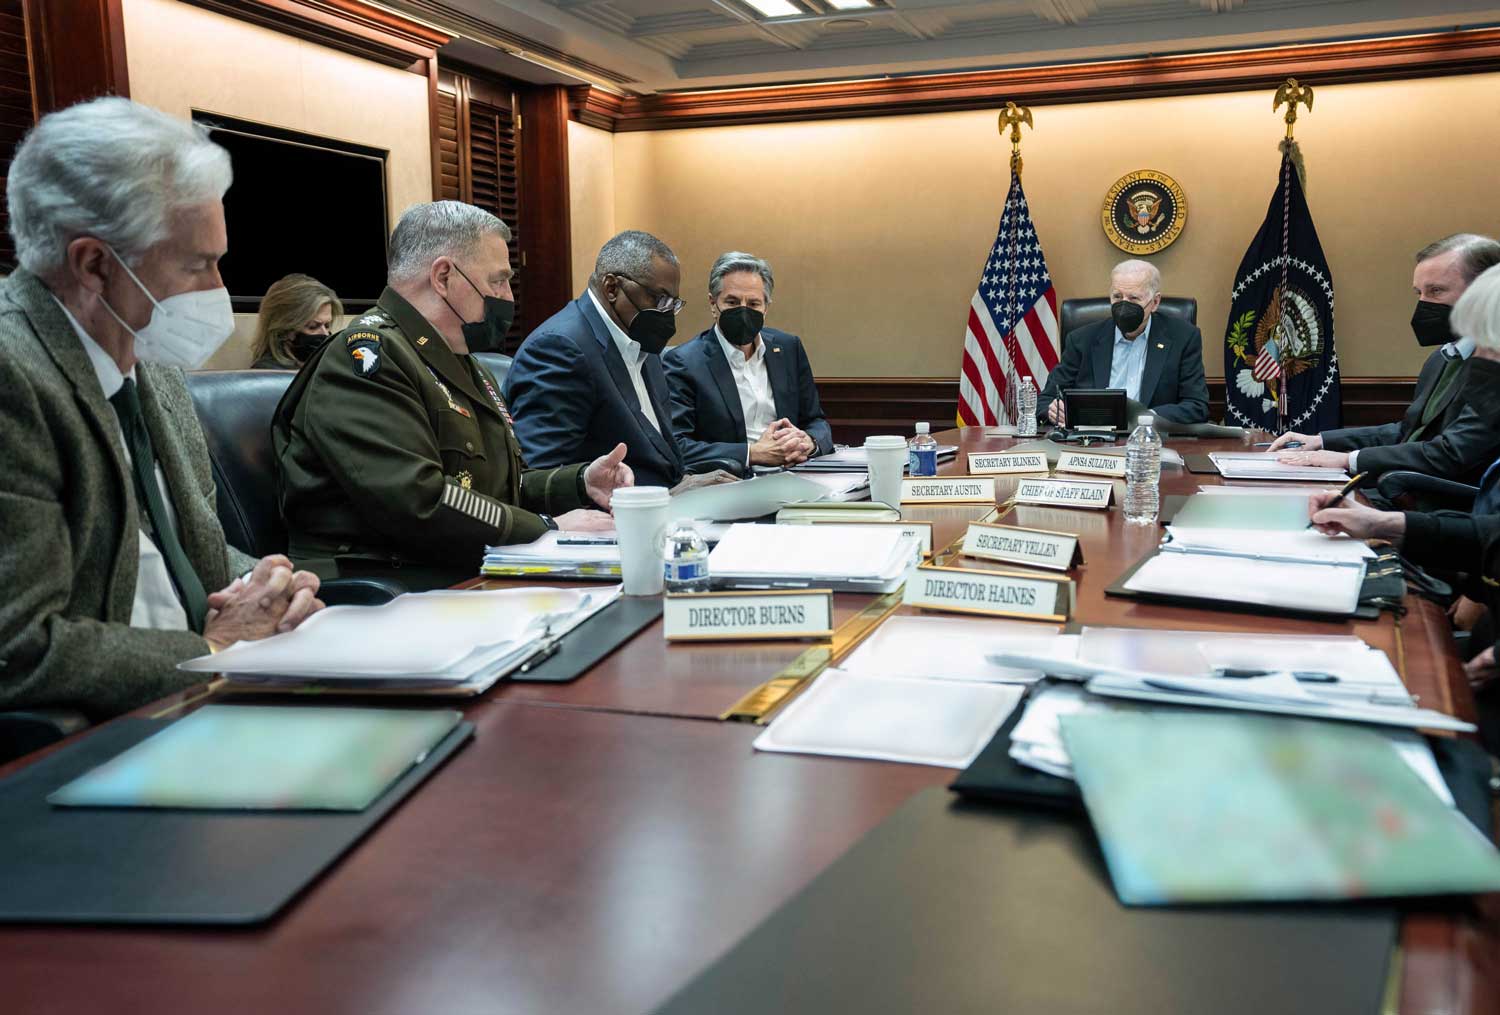 Presidentti Joe Biden johtaa puhetta kokoustilassa turvallisuusneuvoston ympäröimänä.